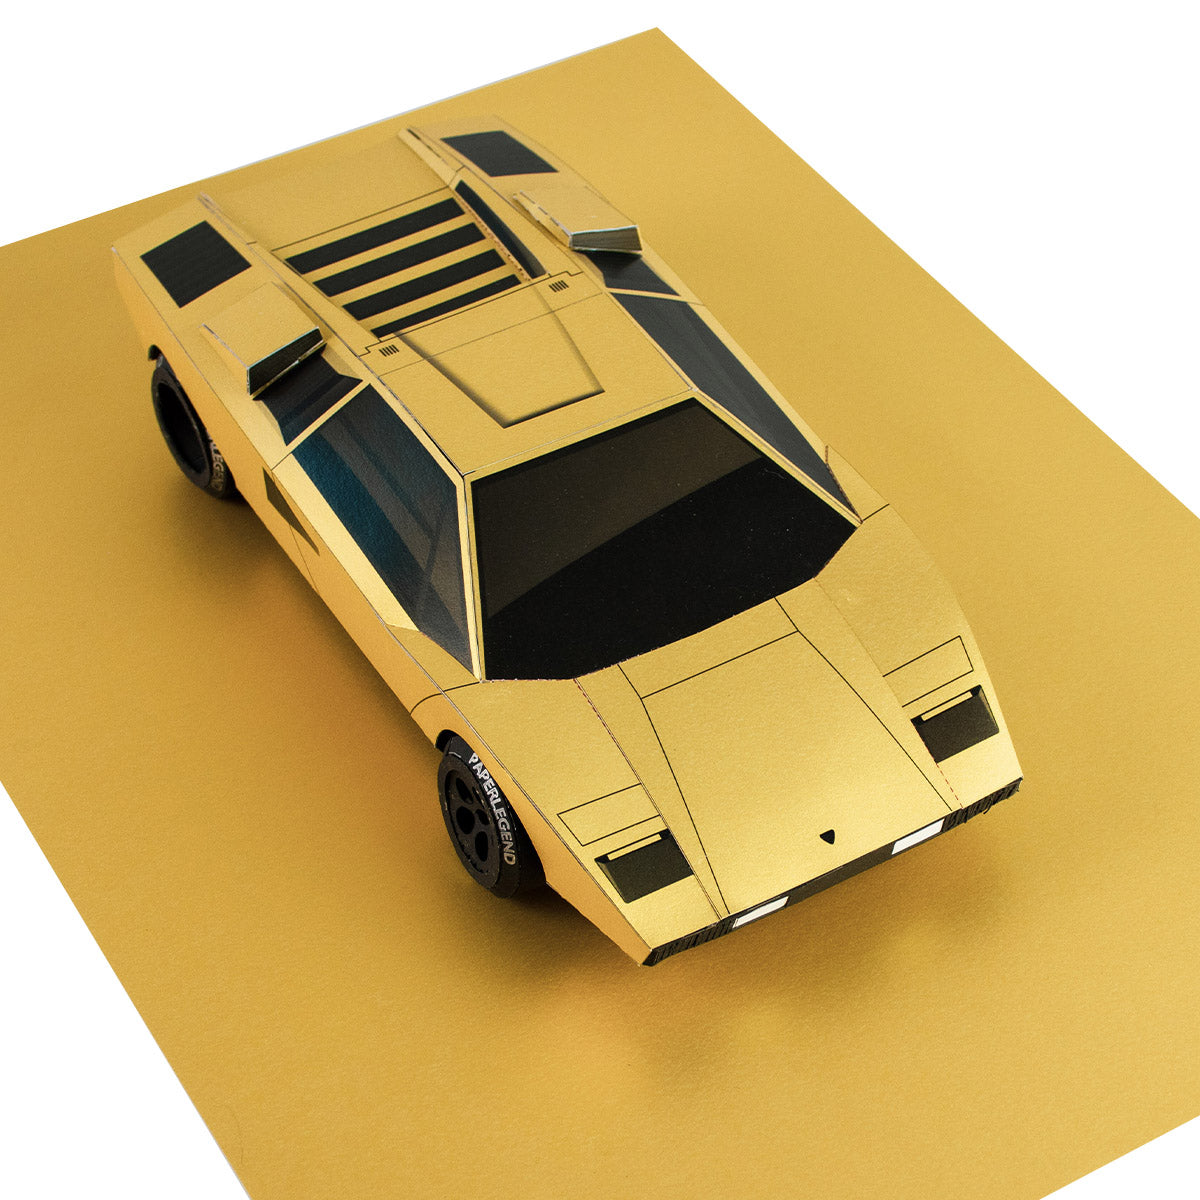 The Coun - 1:18 - Printable Template of Papercraft Car Sculpture